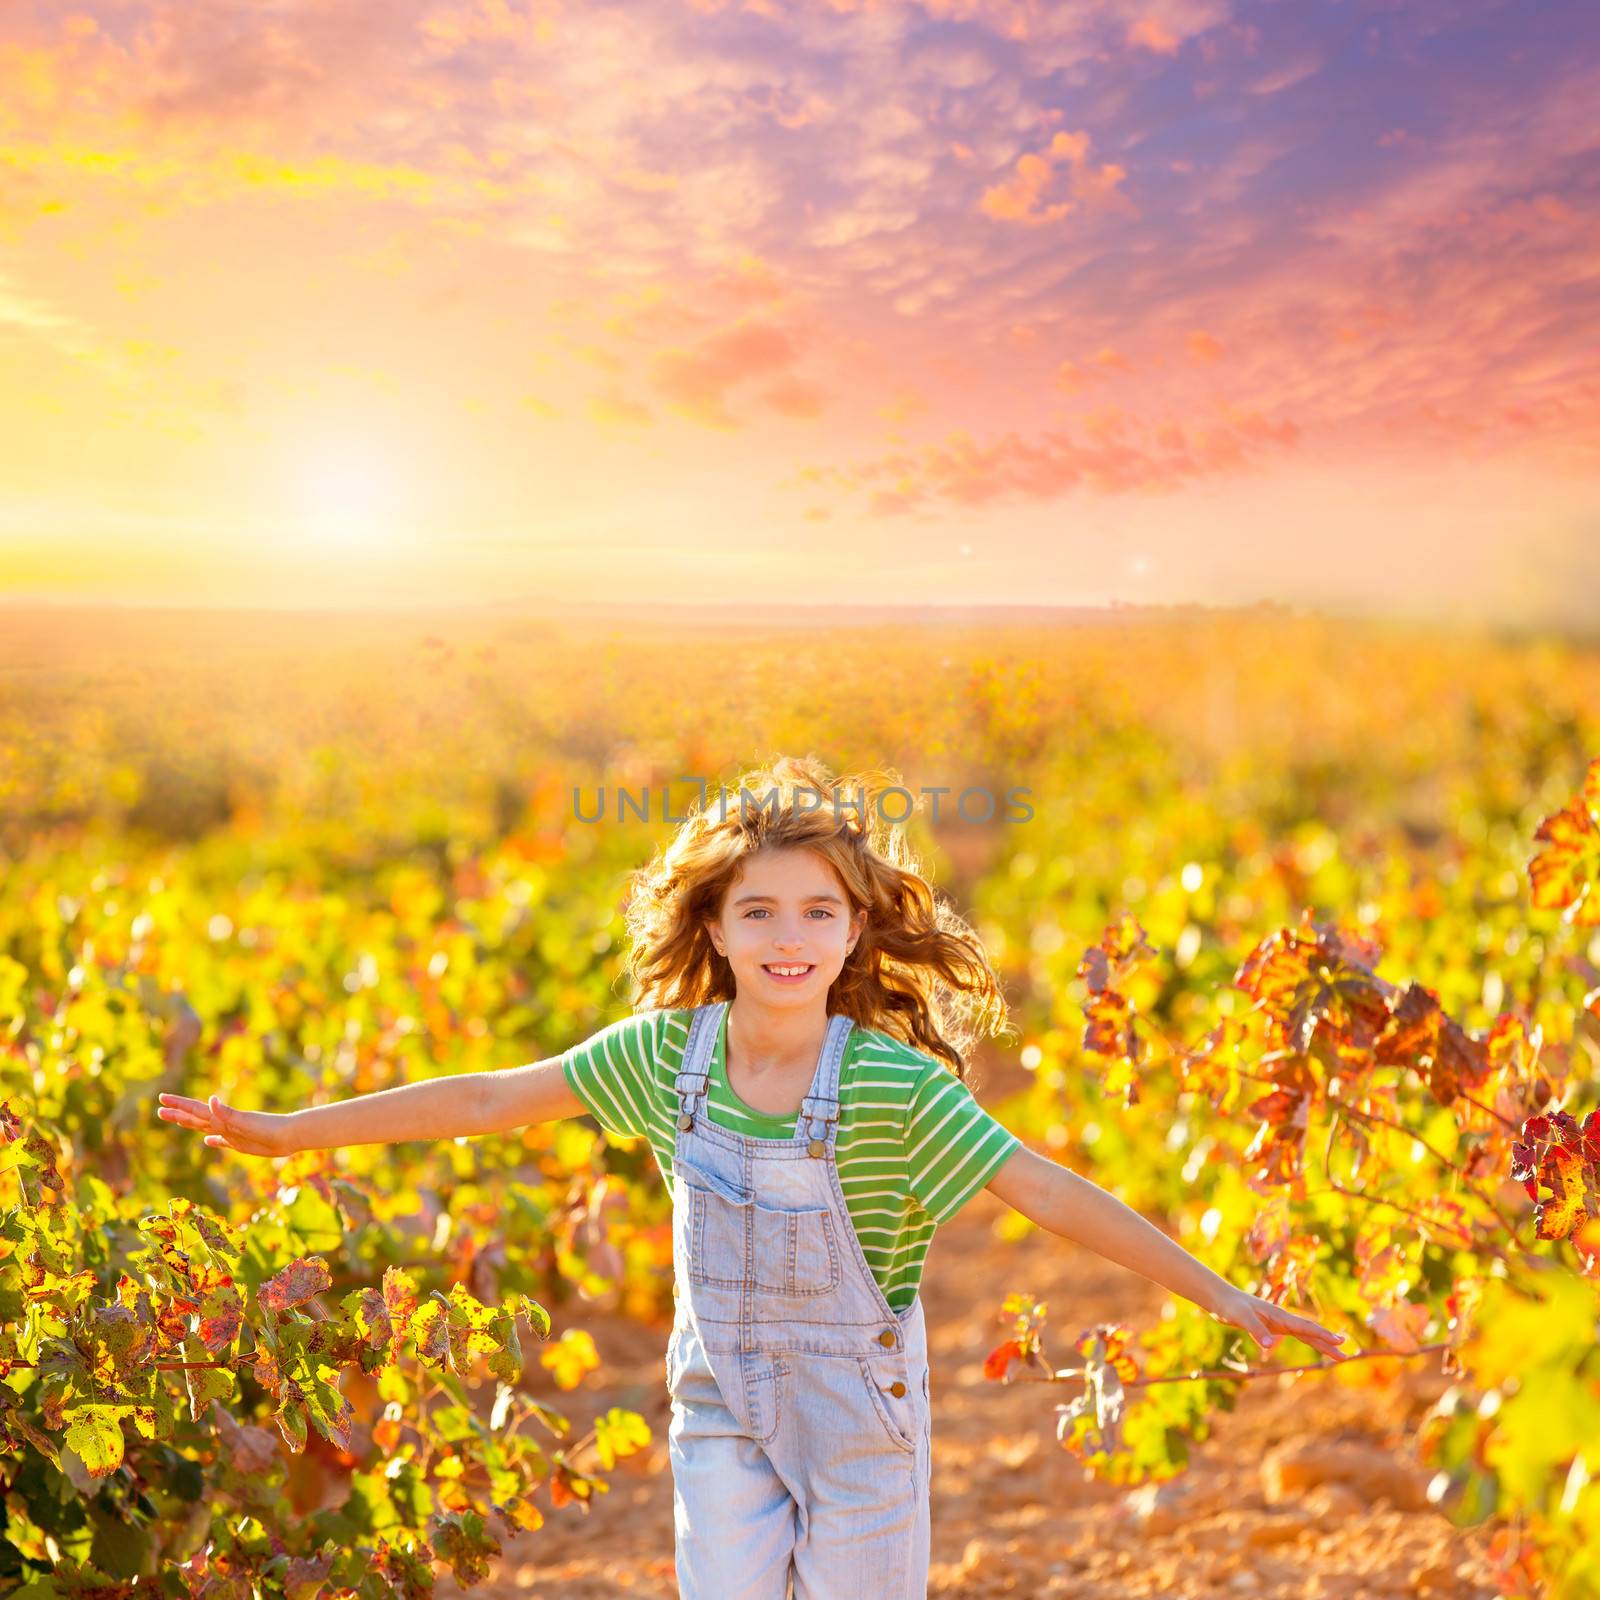 kid farmer girl running in vineyard field in autumn by lunamarina